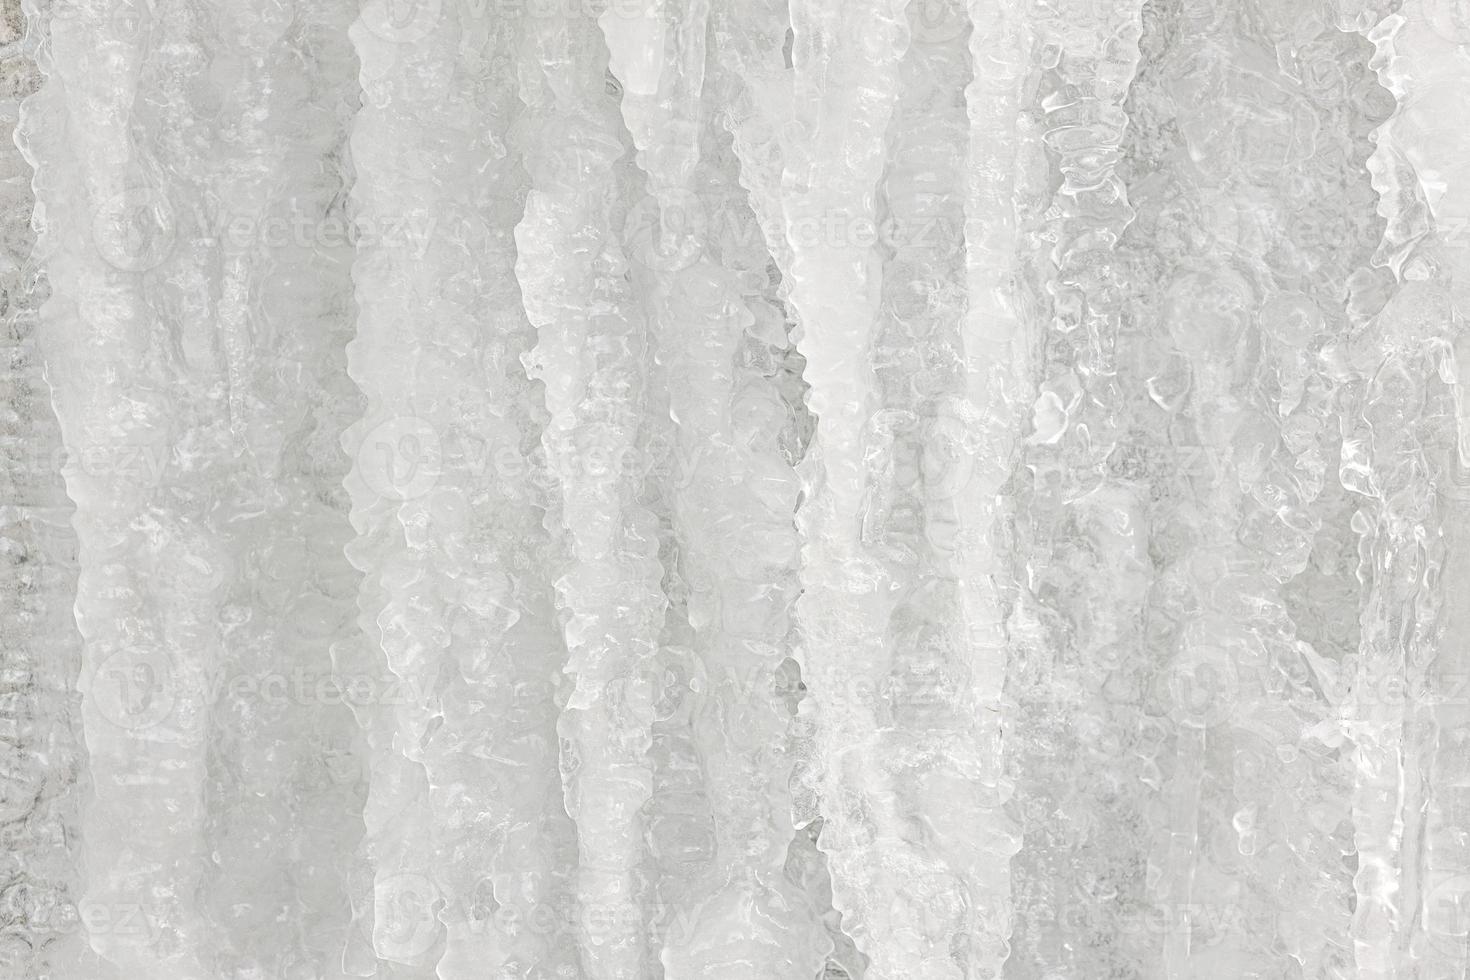 Hintergrund aus Eis. die Struktur von gefrorenem Wasser. Textur foto